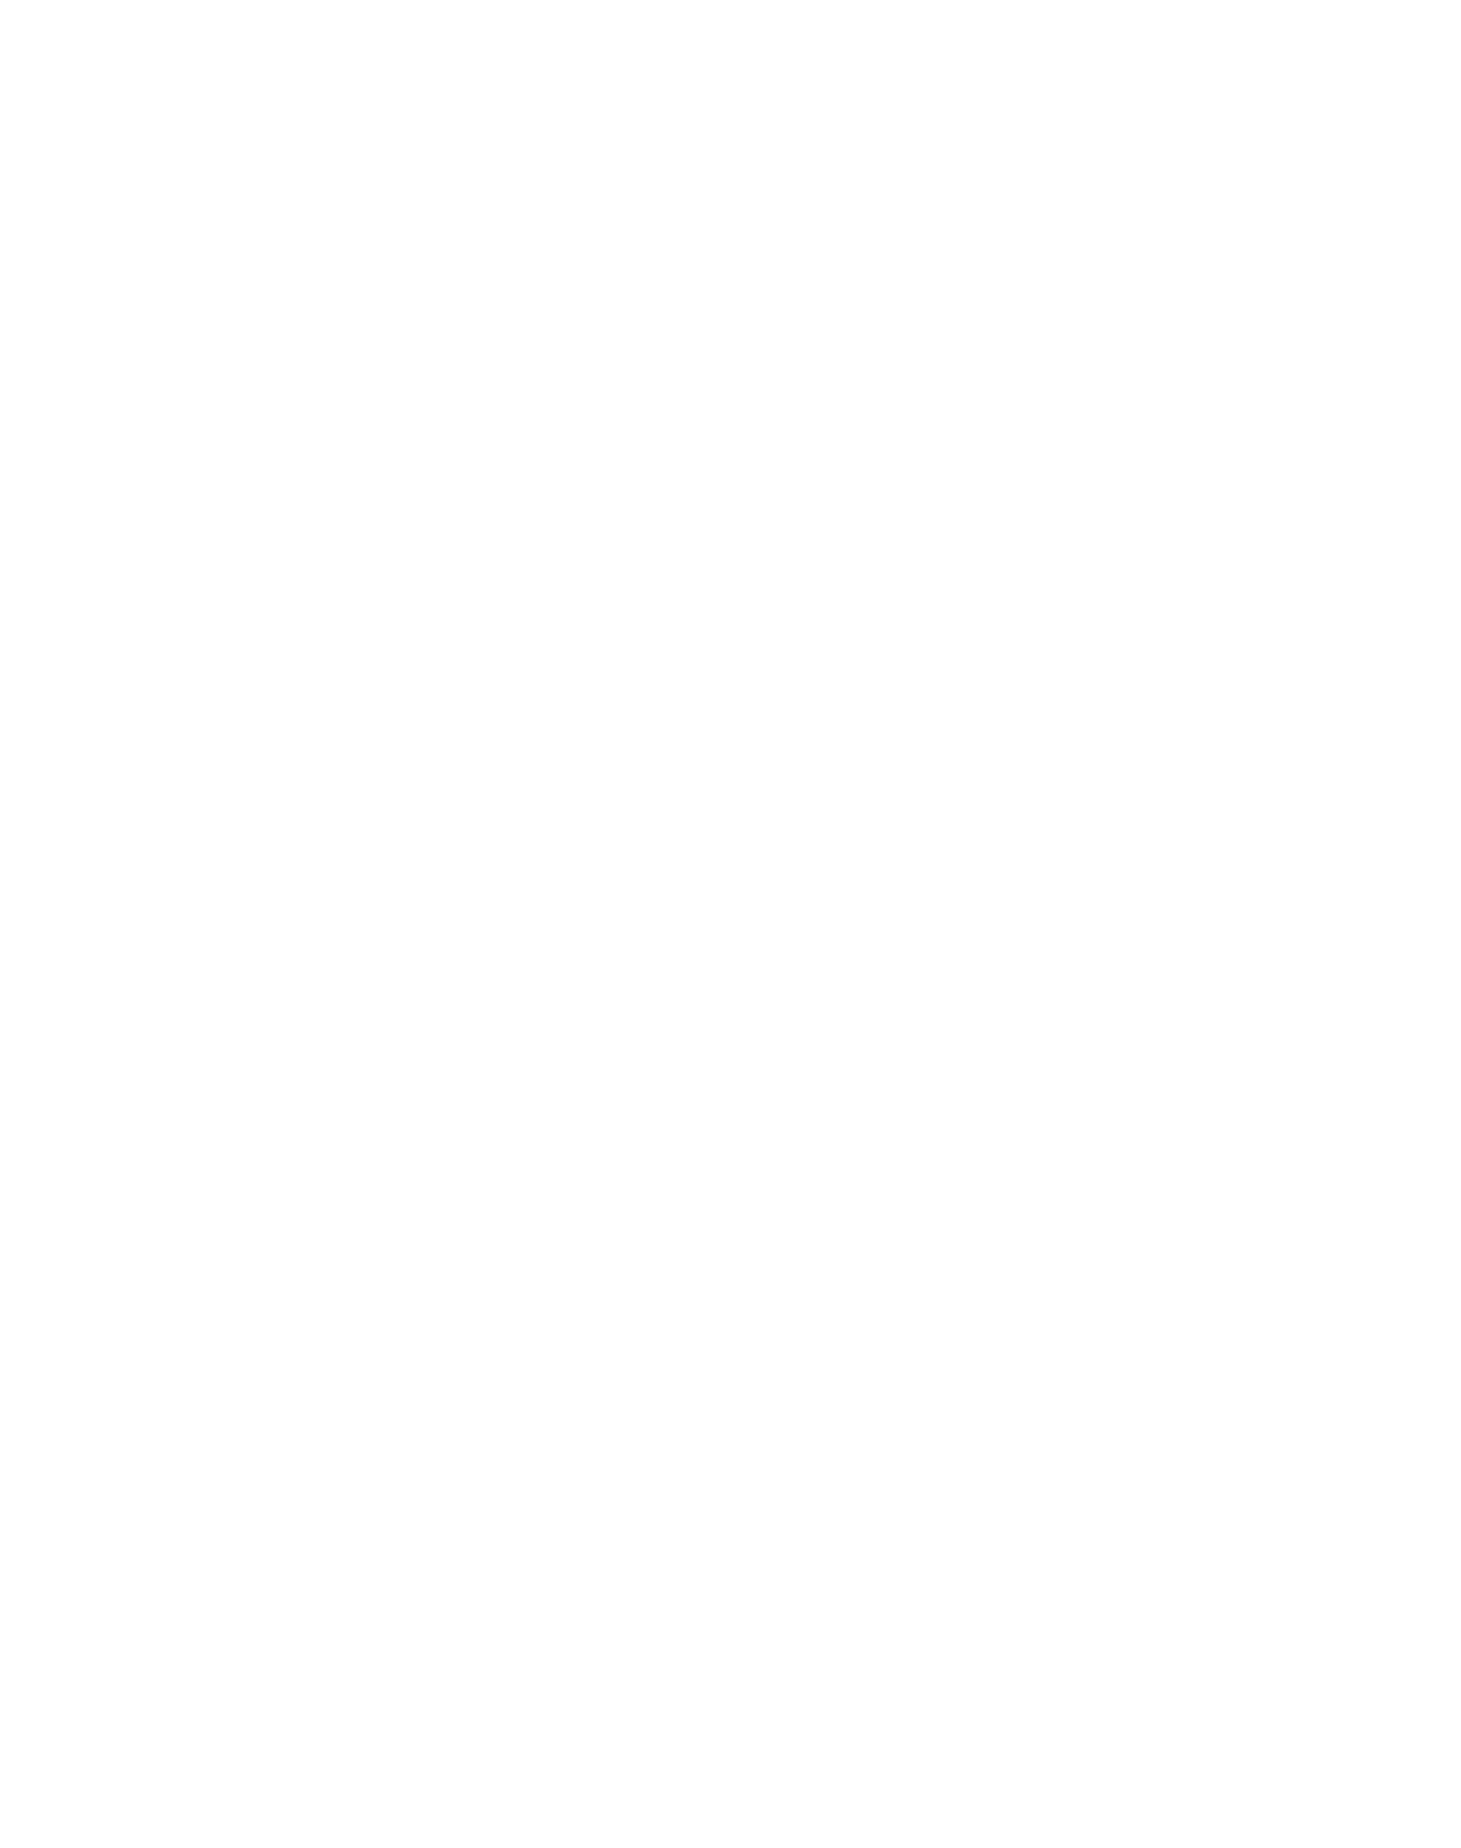 RocketDogShawn